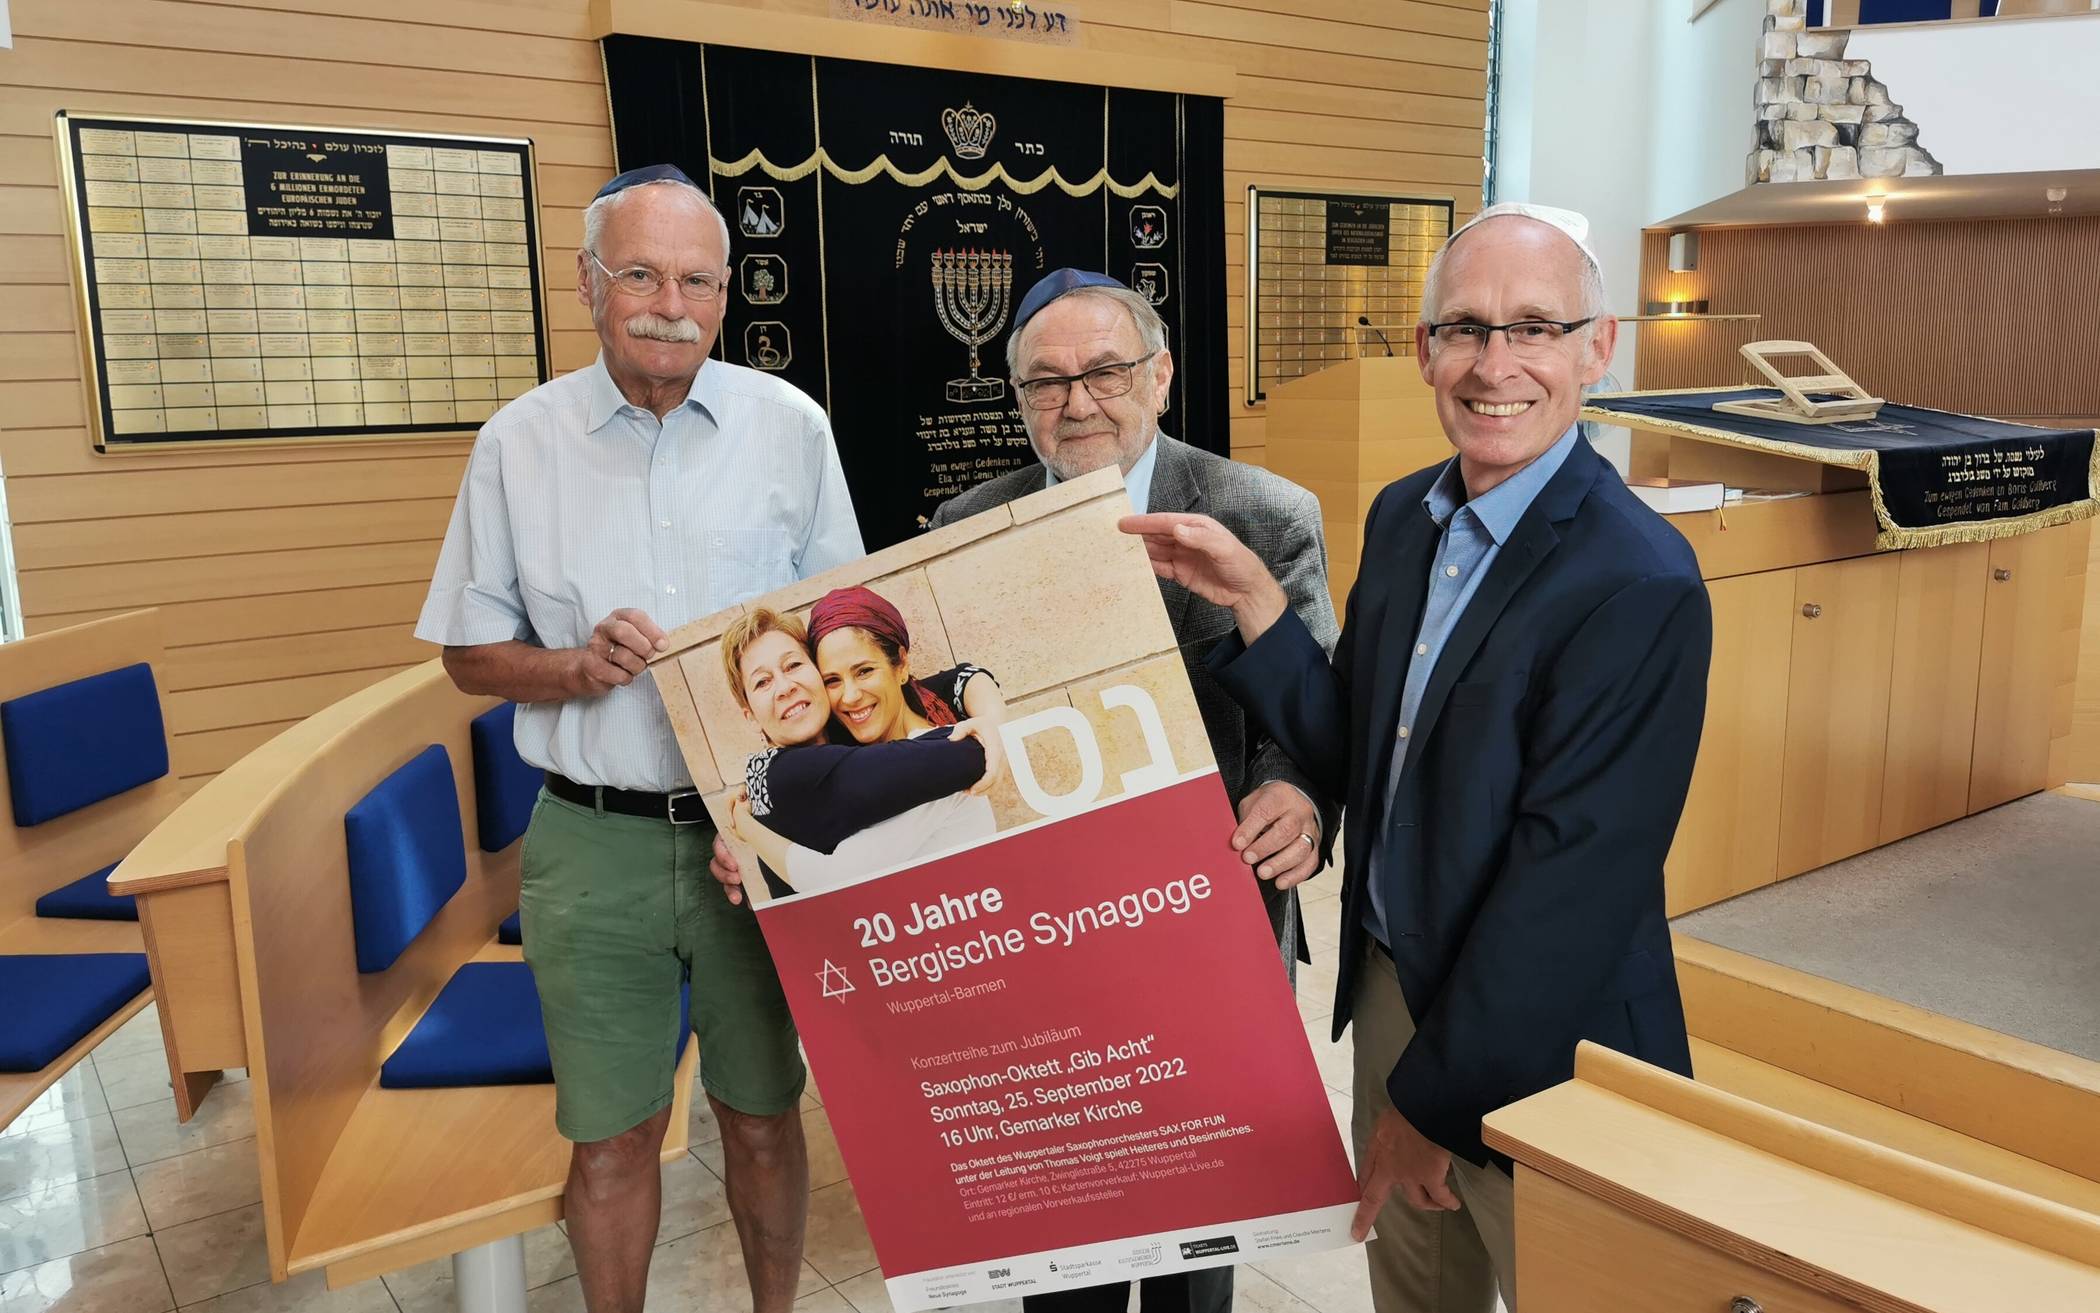 Bergische Synagoge: Vier Konzerte für 20 Jahre